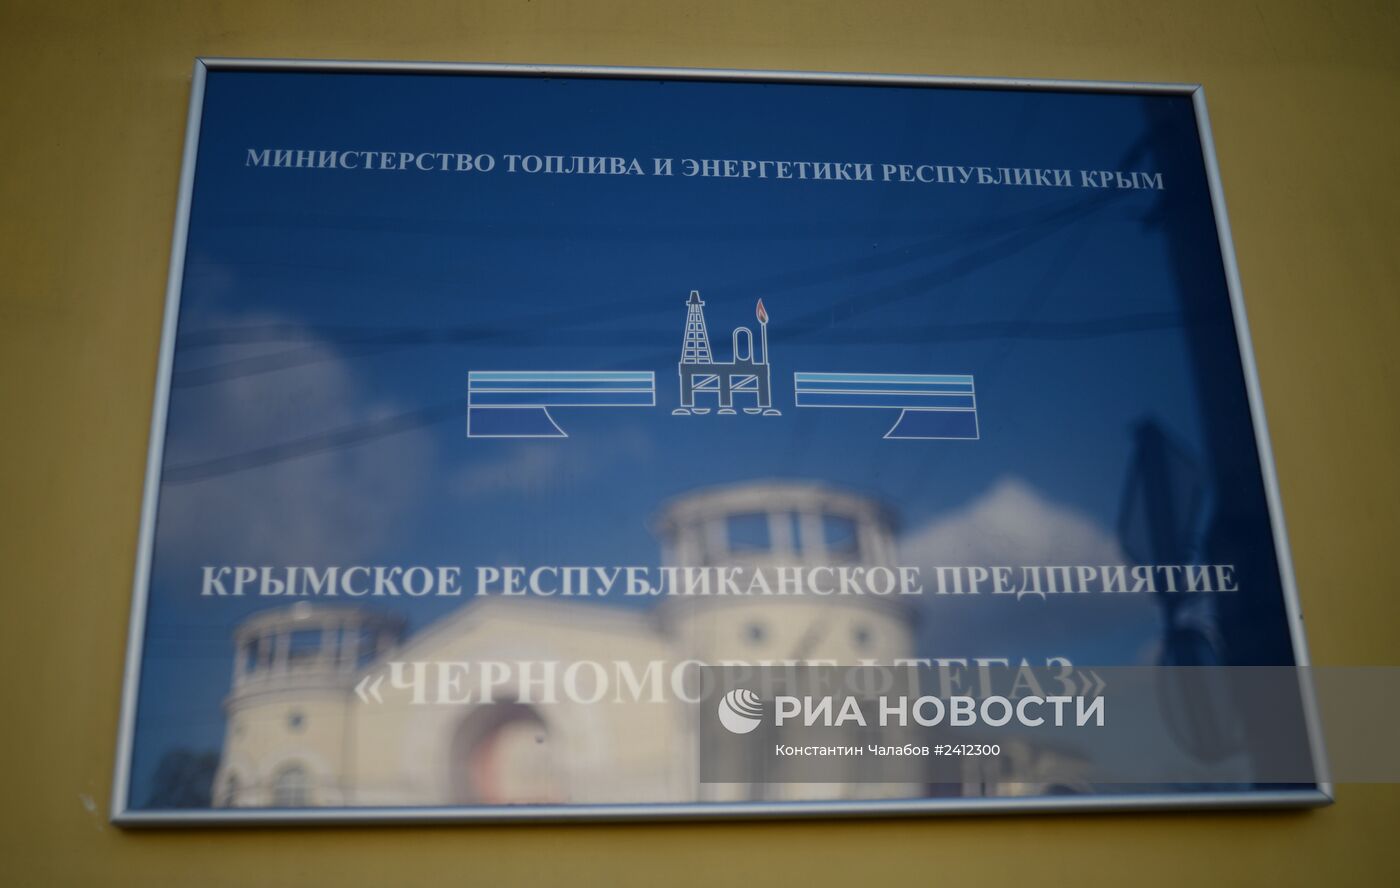 Офис компании "Черноморнефтегаз" в Симферополе